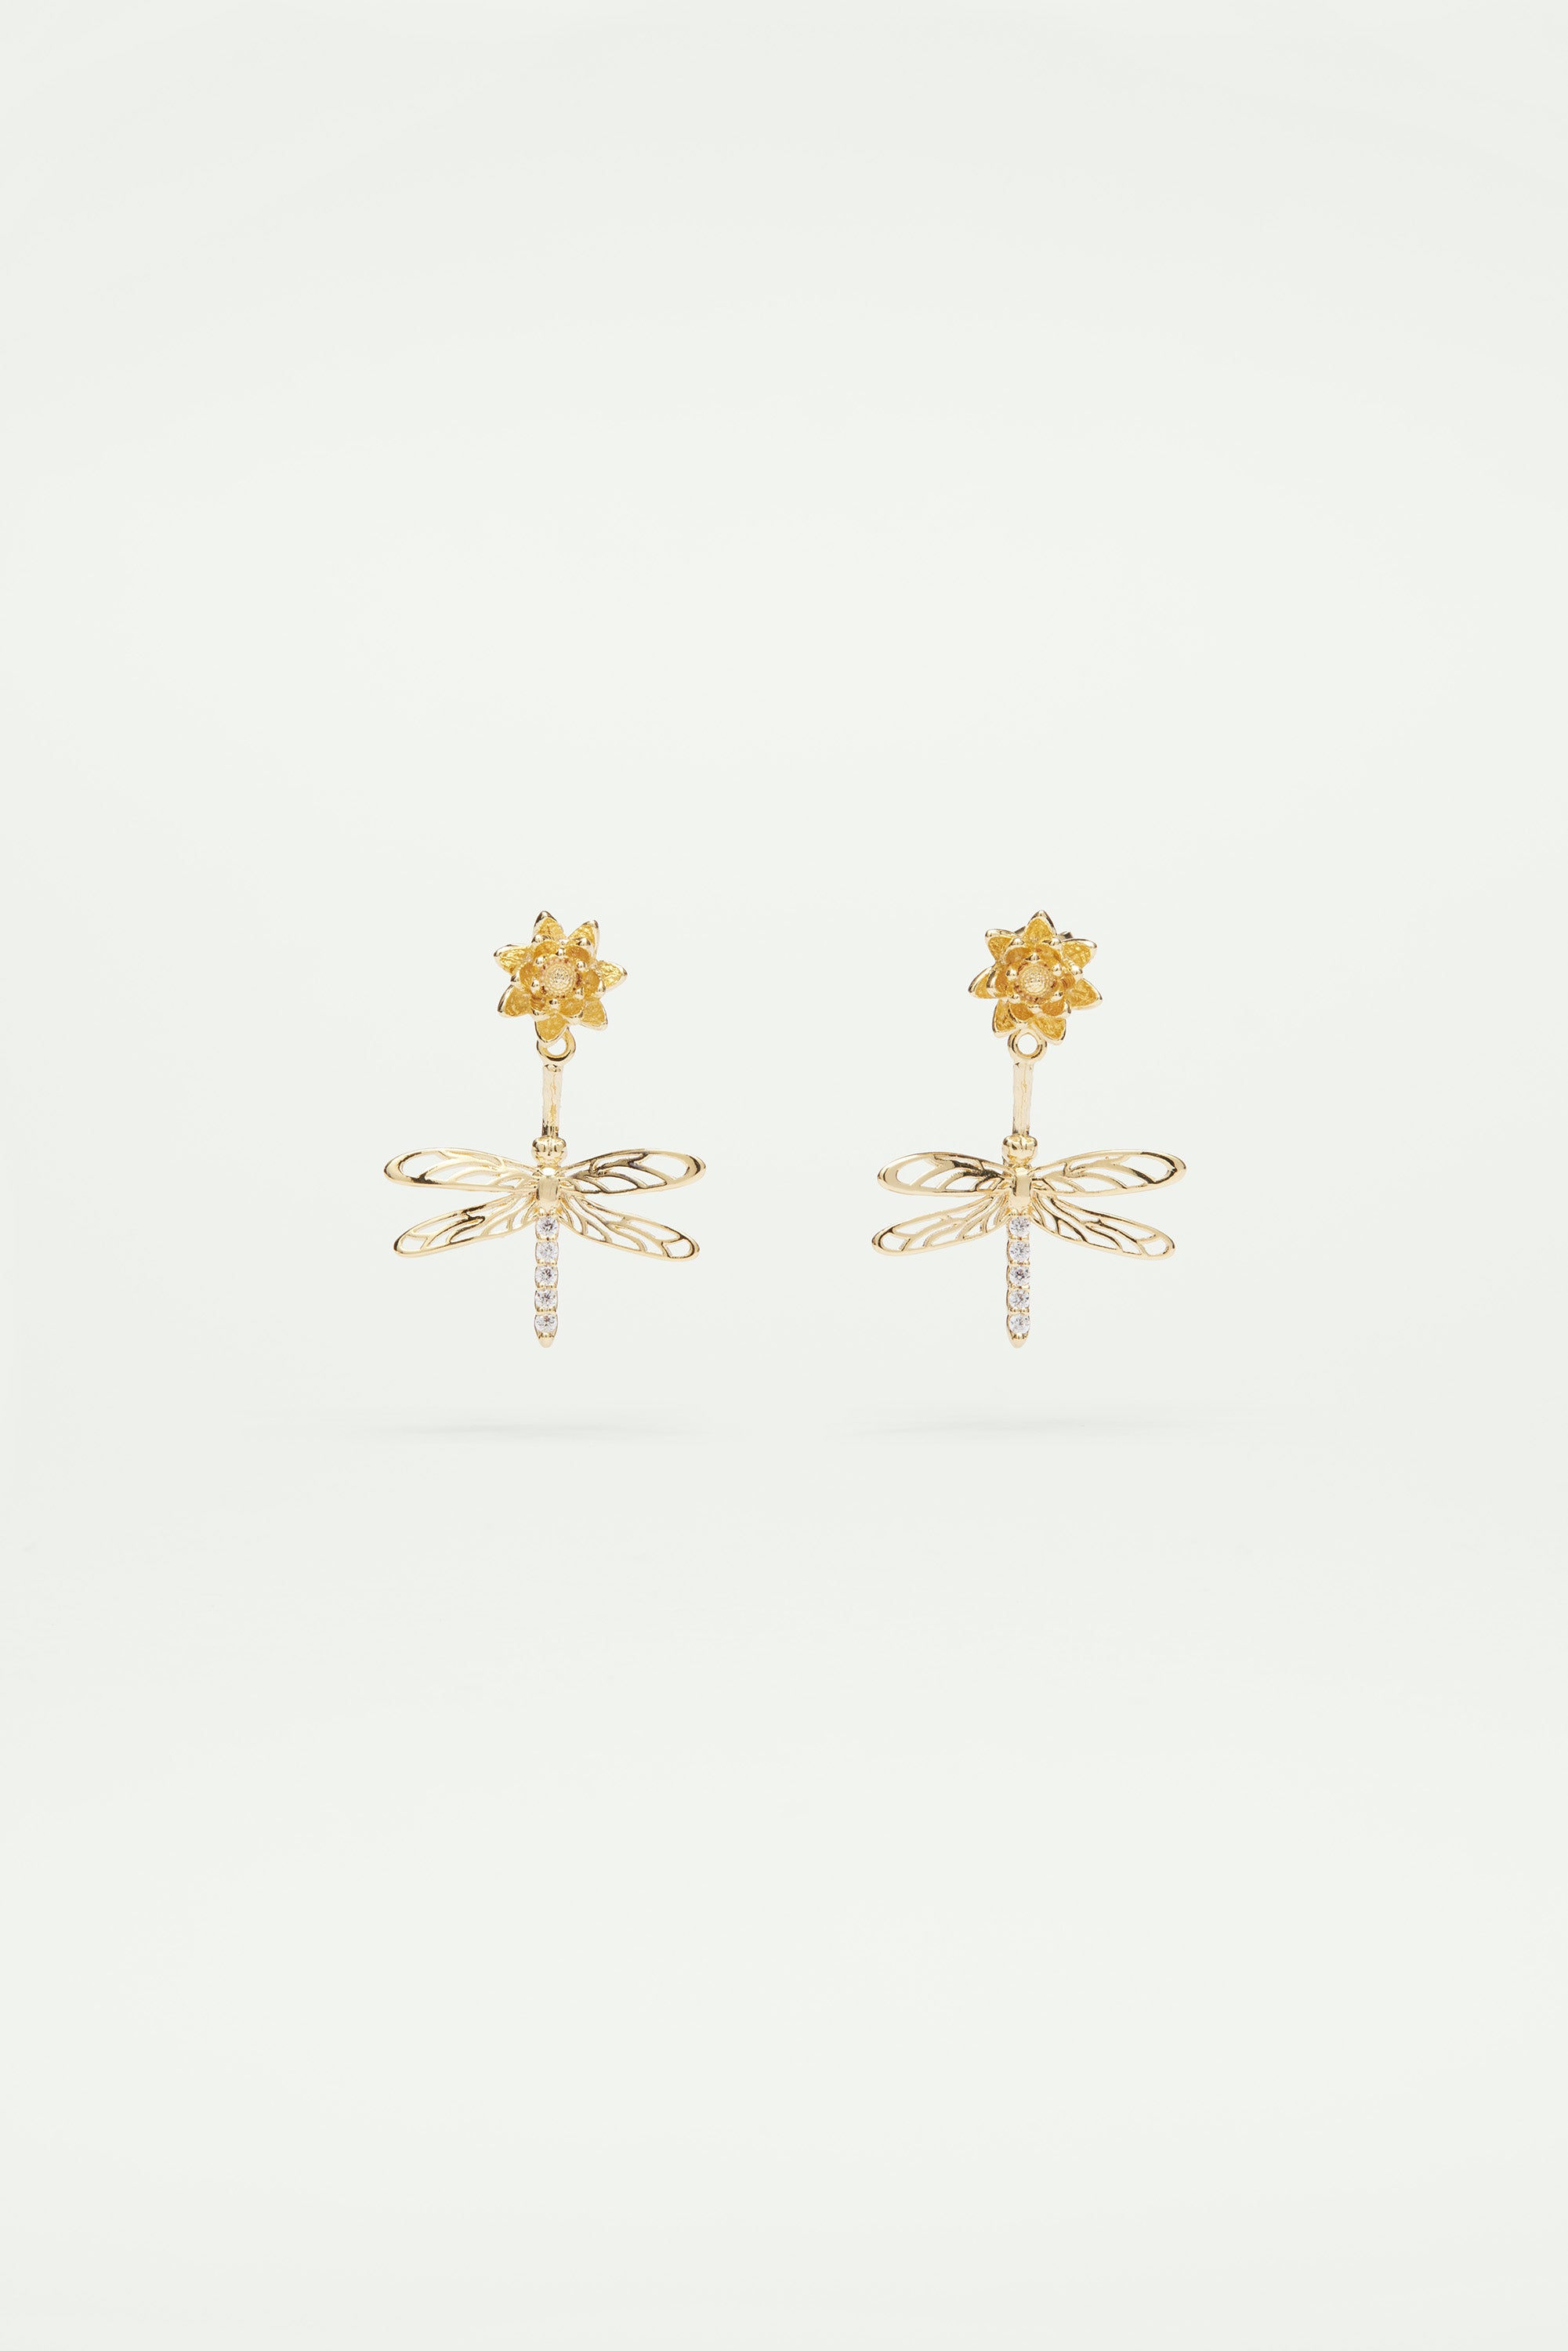 Boucles d'oreilles tiges pendantes libellule, fleur et cristaux